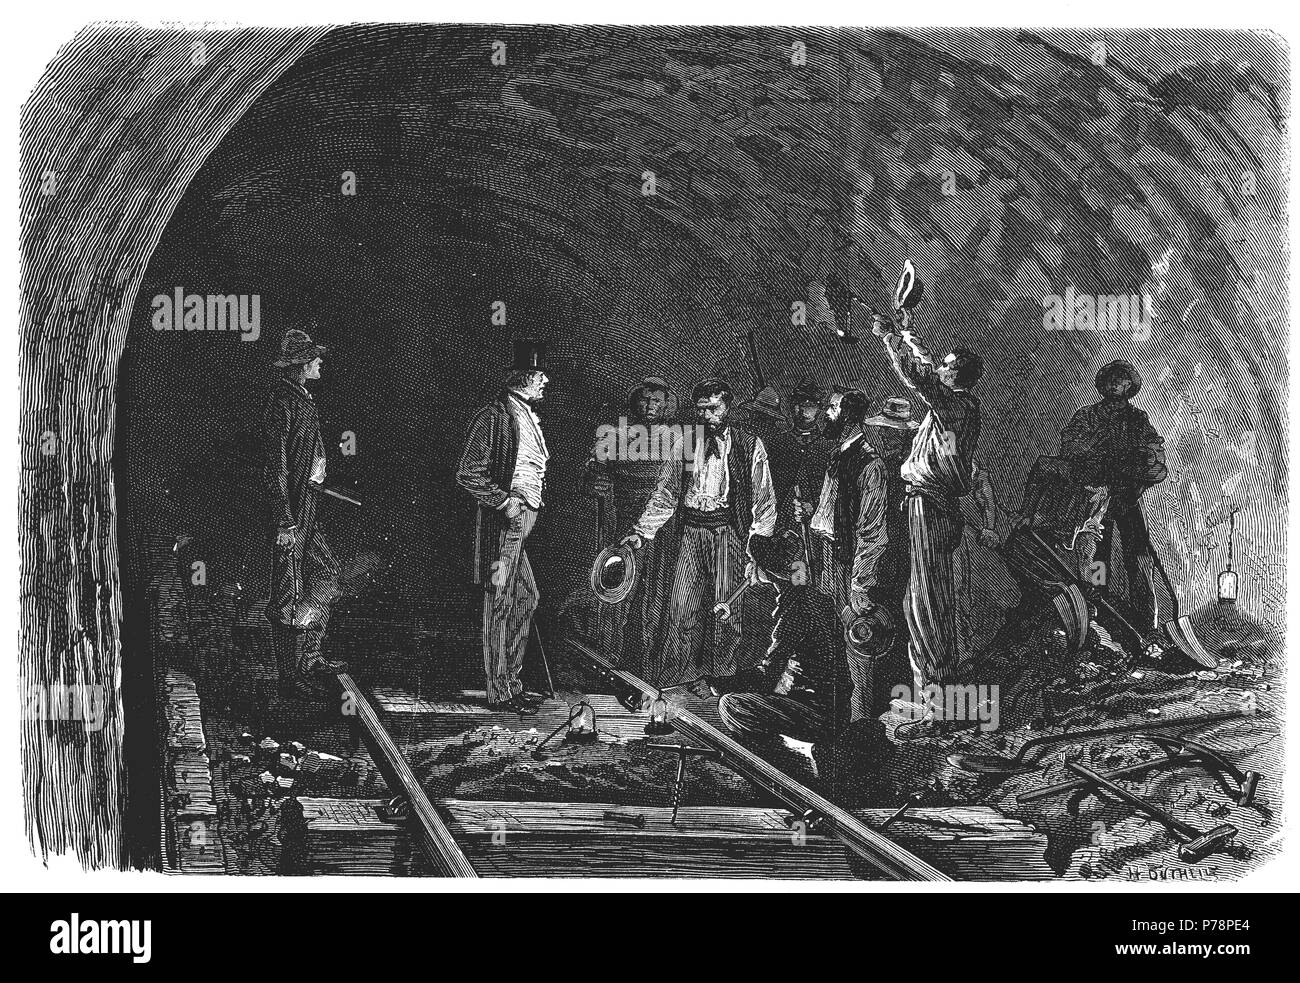 Apertura de los Alpes, túnel de Mont Cenís entre Francia e Italia, unión entre los túneles y colocación del ultimo raíl, en septiembre de 1871. Grabado de época. Stock Photo